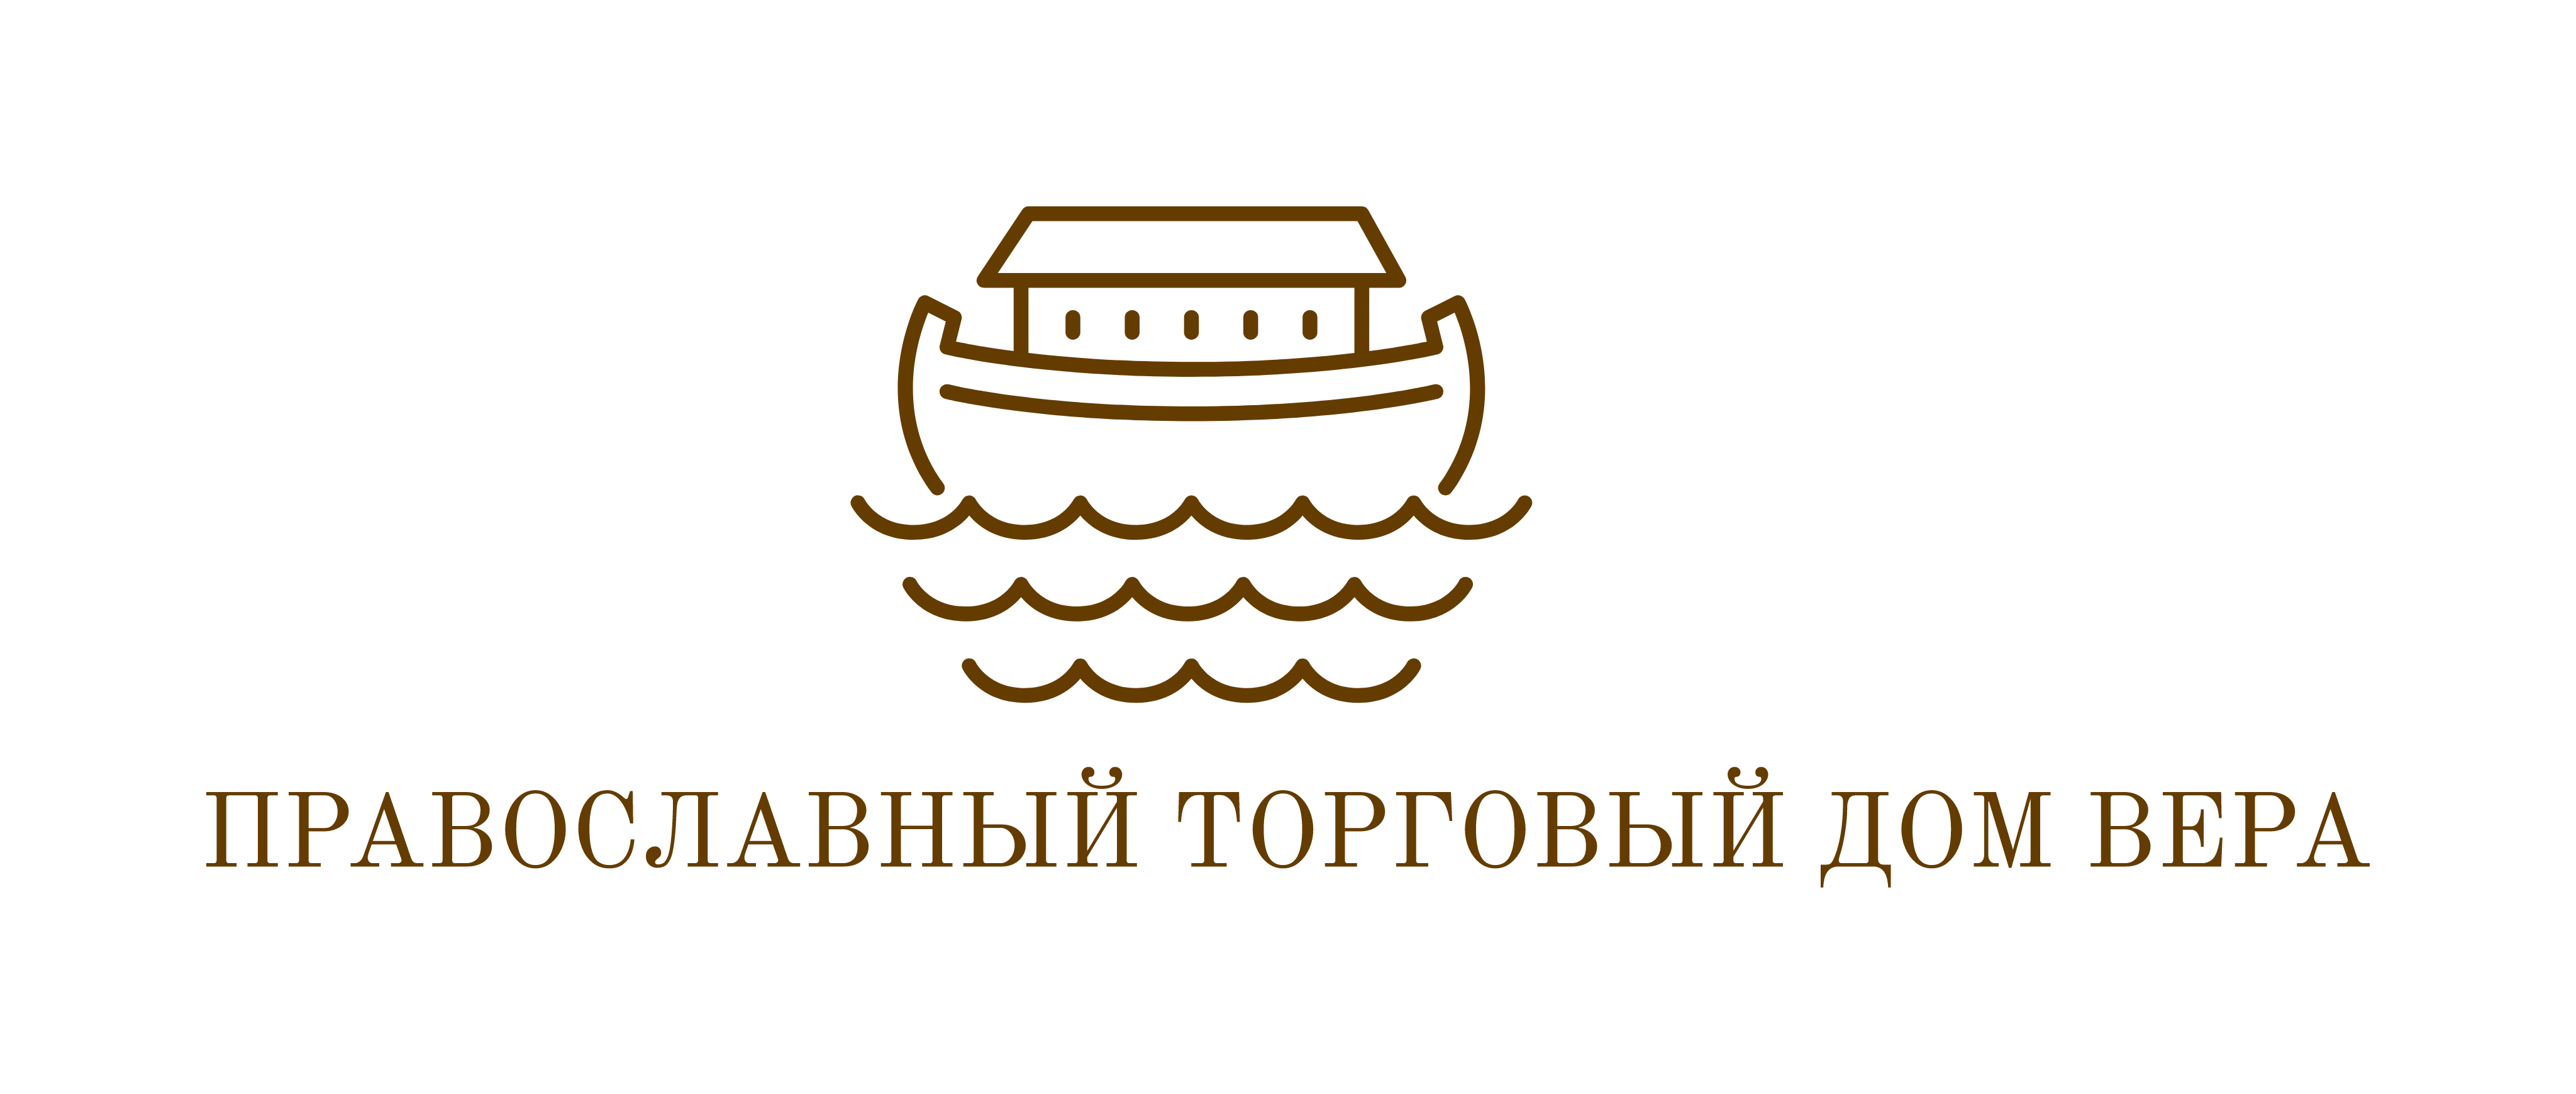 Православный торговый дом ВЕРА